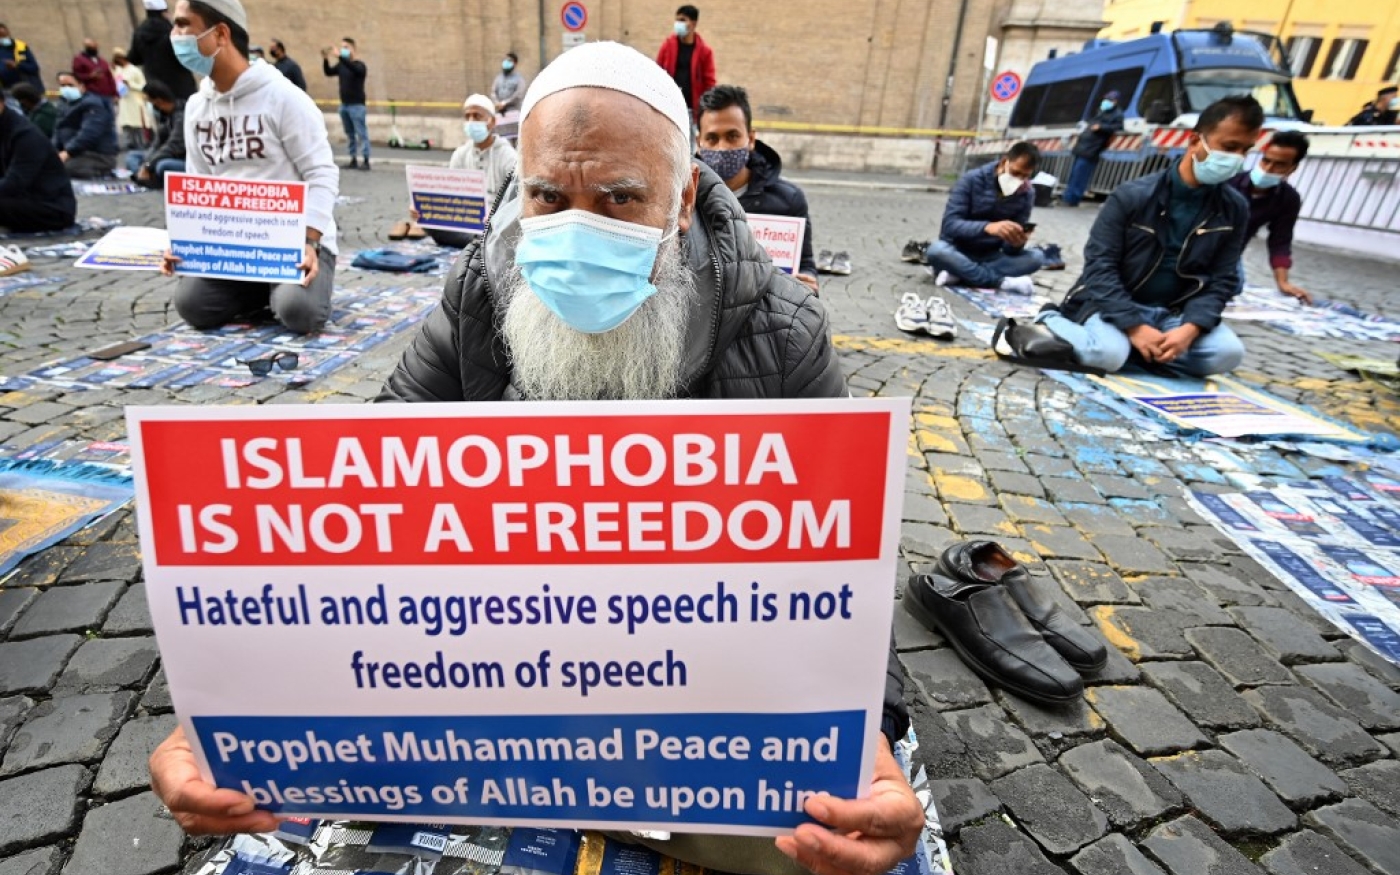 Des musulmans brandissent des affiches tandis qu’ils prient lors d’une manifestation contre l’islamophobie dans le centre de Rome, le 30 octobre 2020 (AFP)